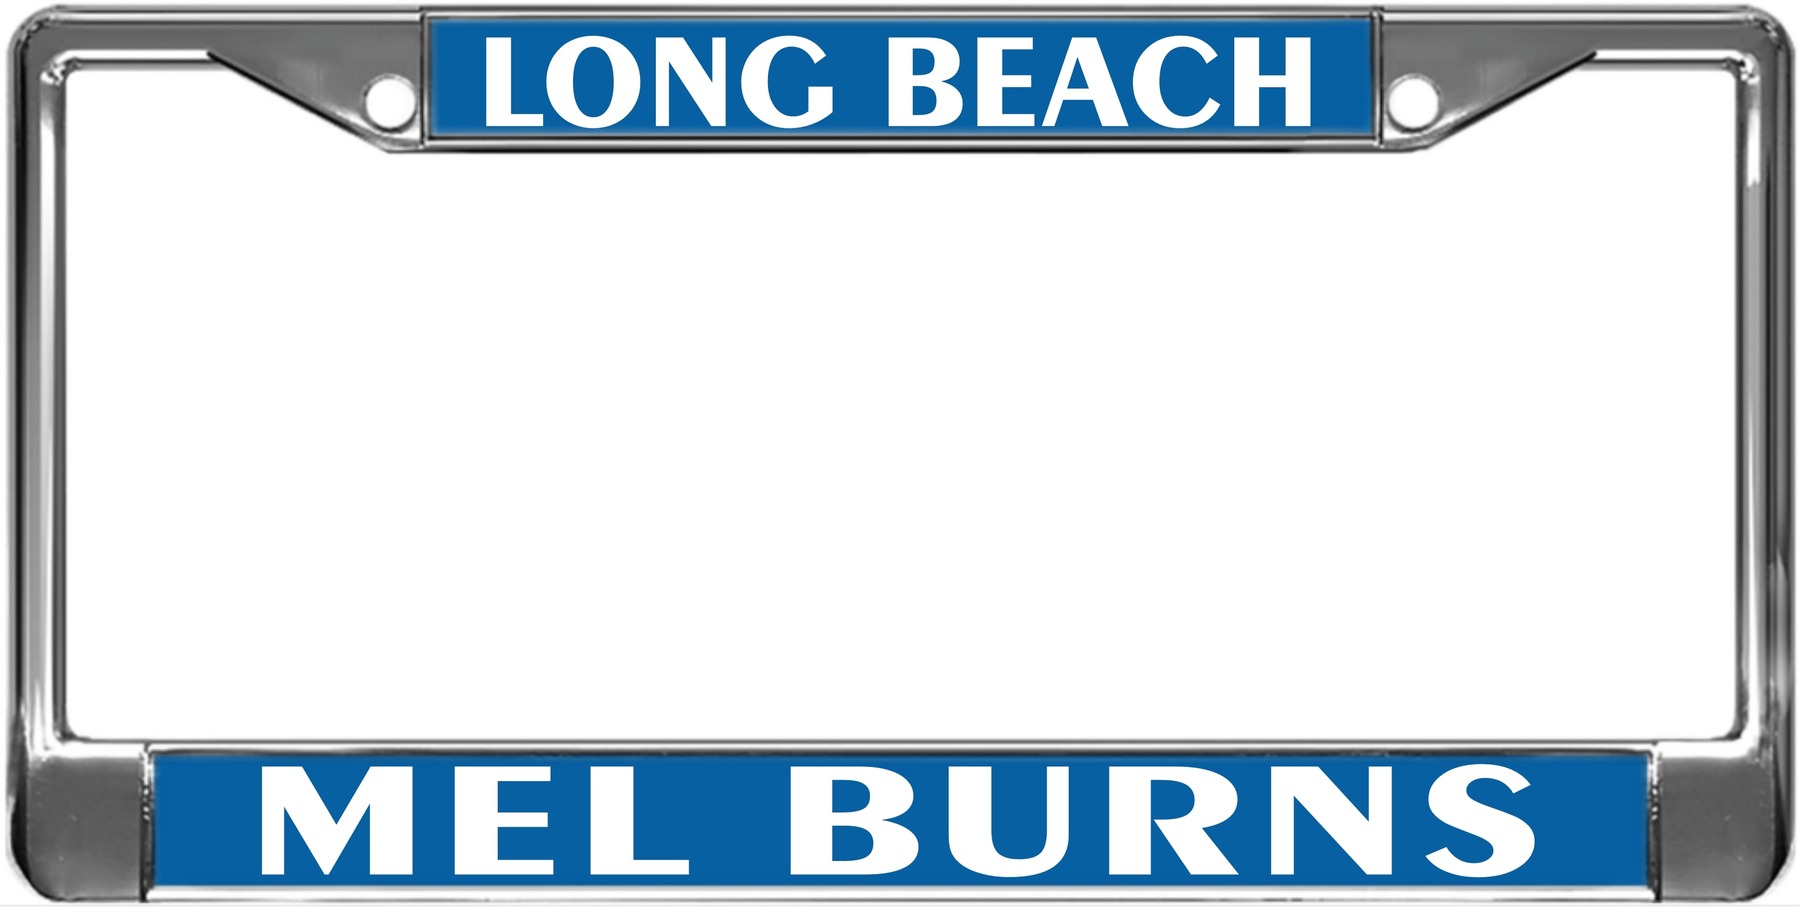 Mel Burns - Metal License Plate Frame